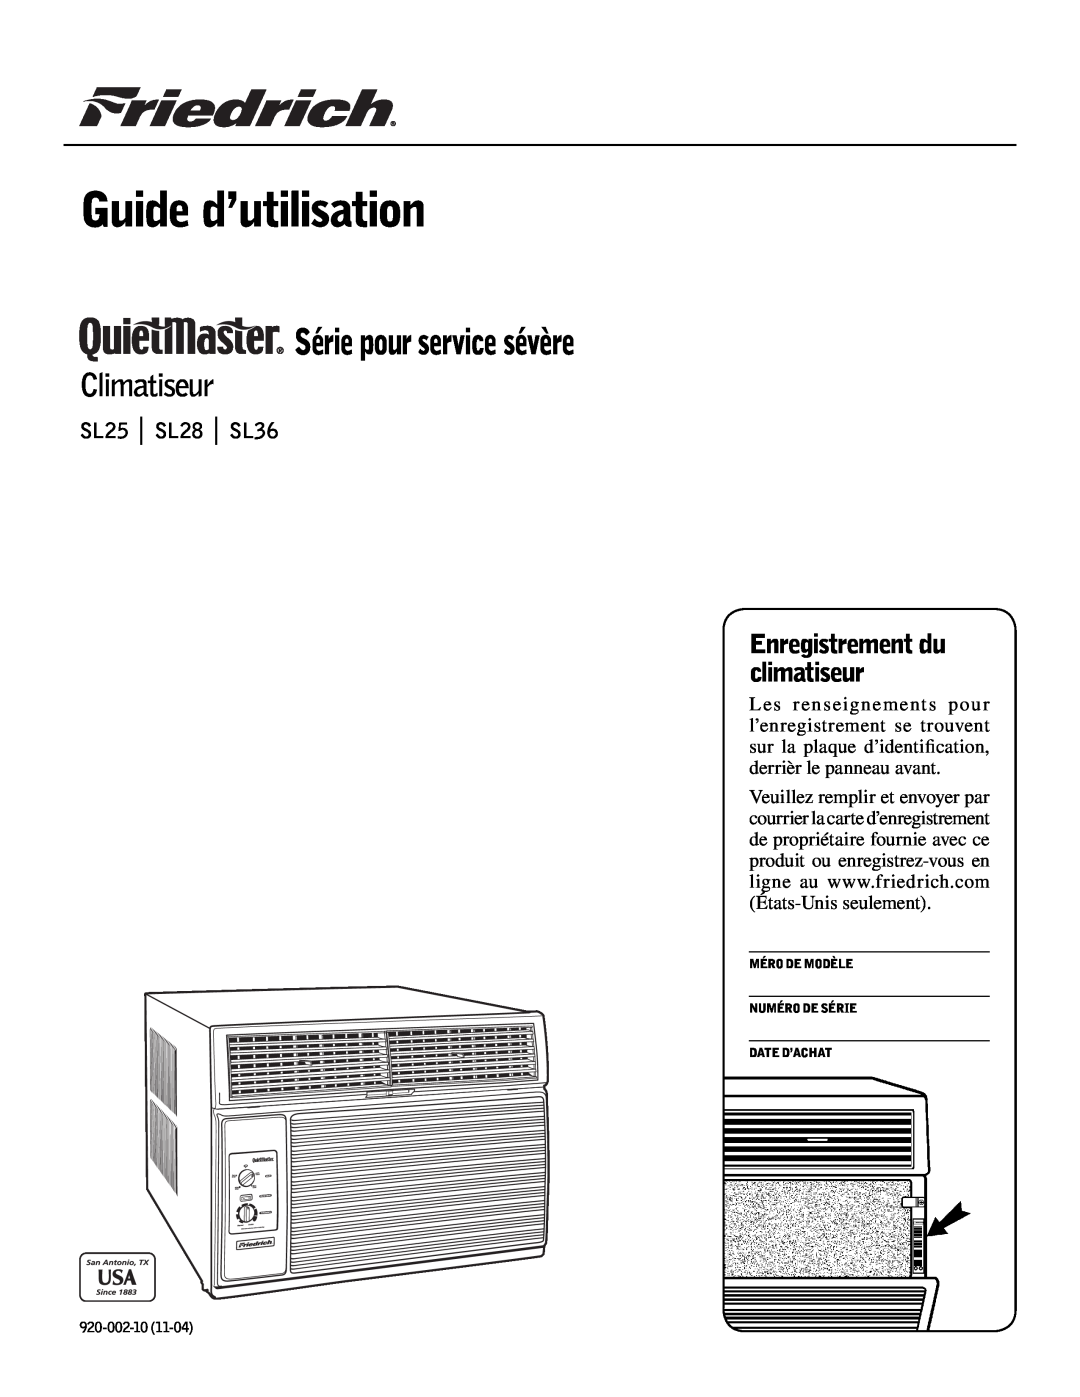 Friedrich Guide d’utilisation, Série pour service sévère, Climatiseur, Enregistrement du climatiseur, SL25 SL28 SL36 